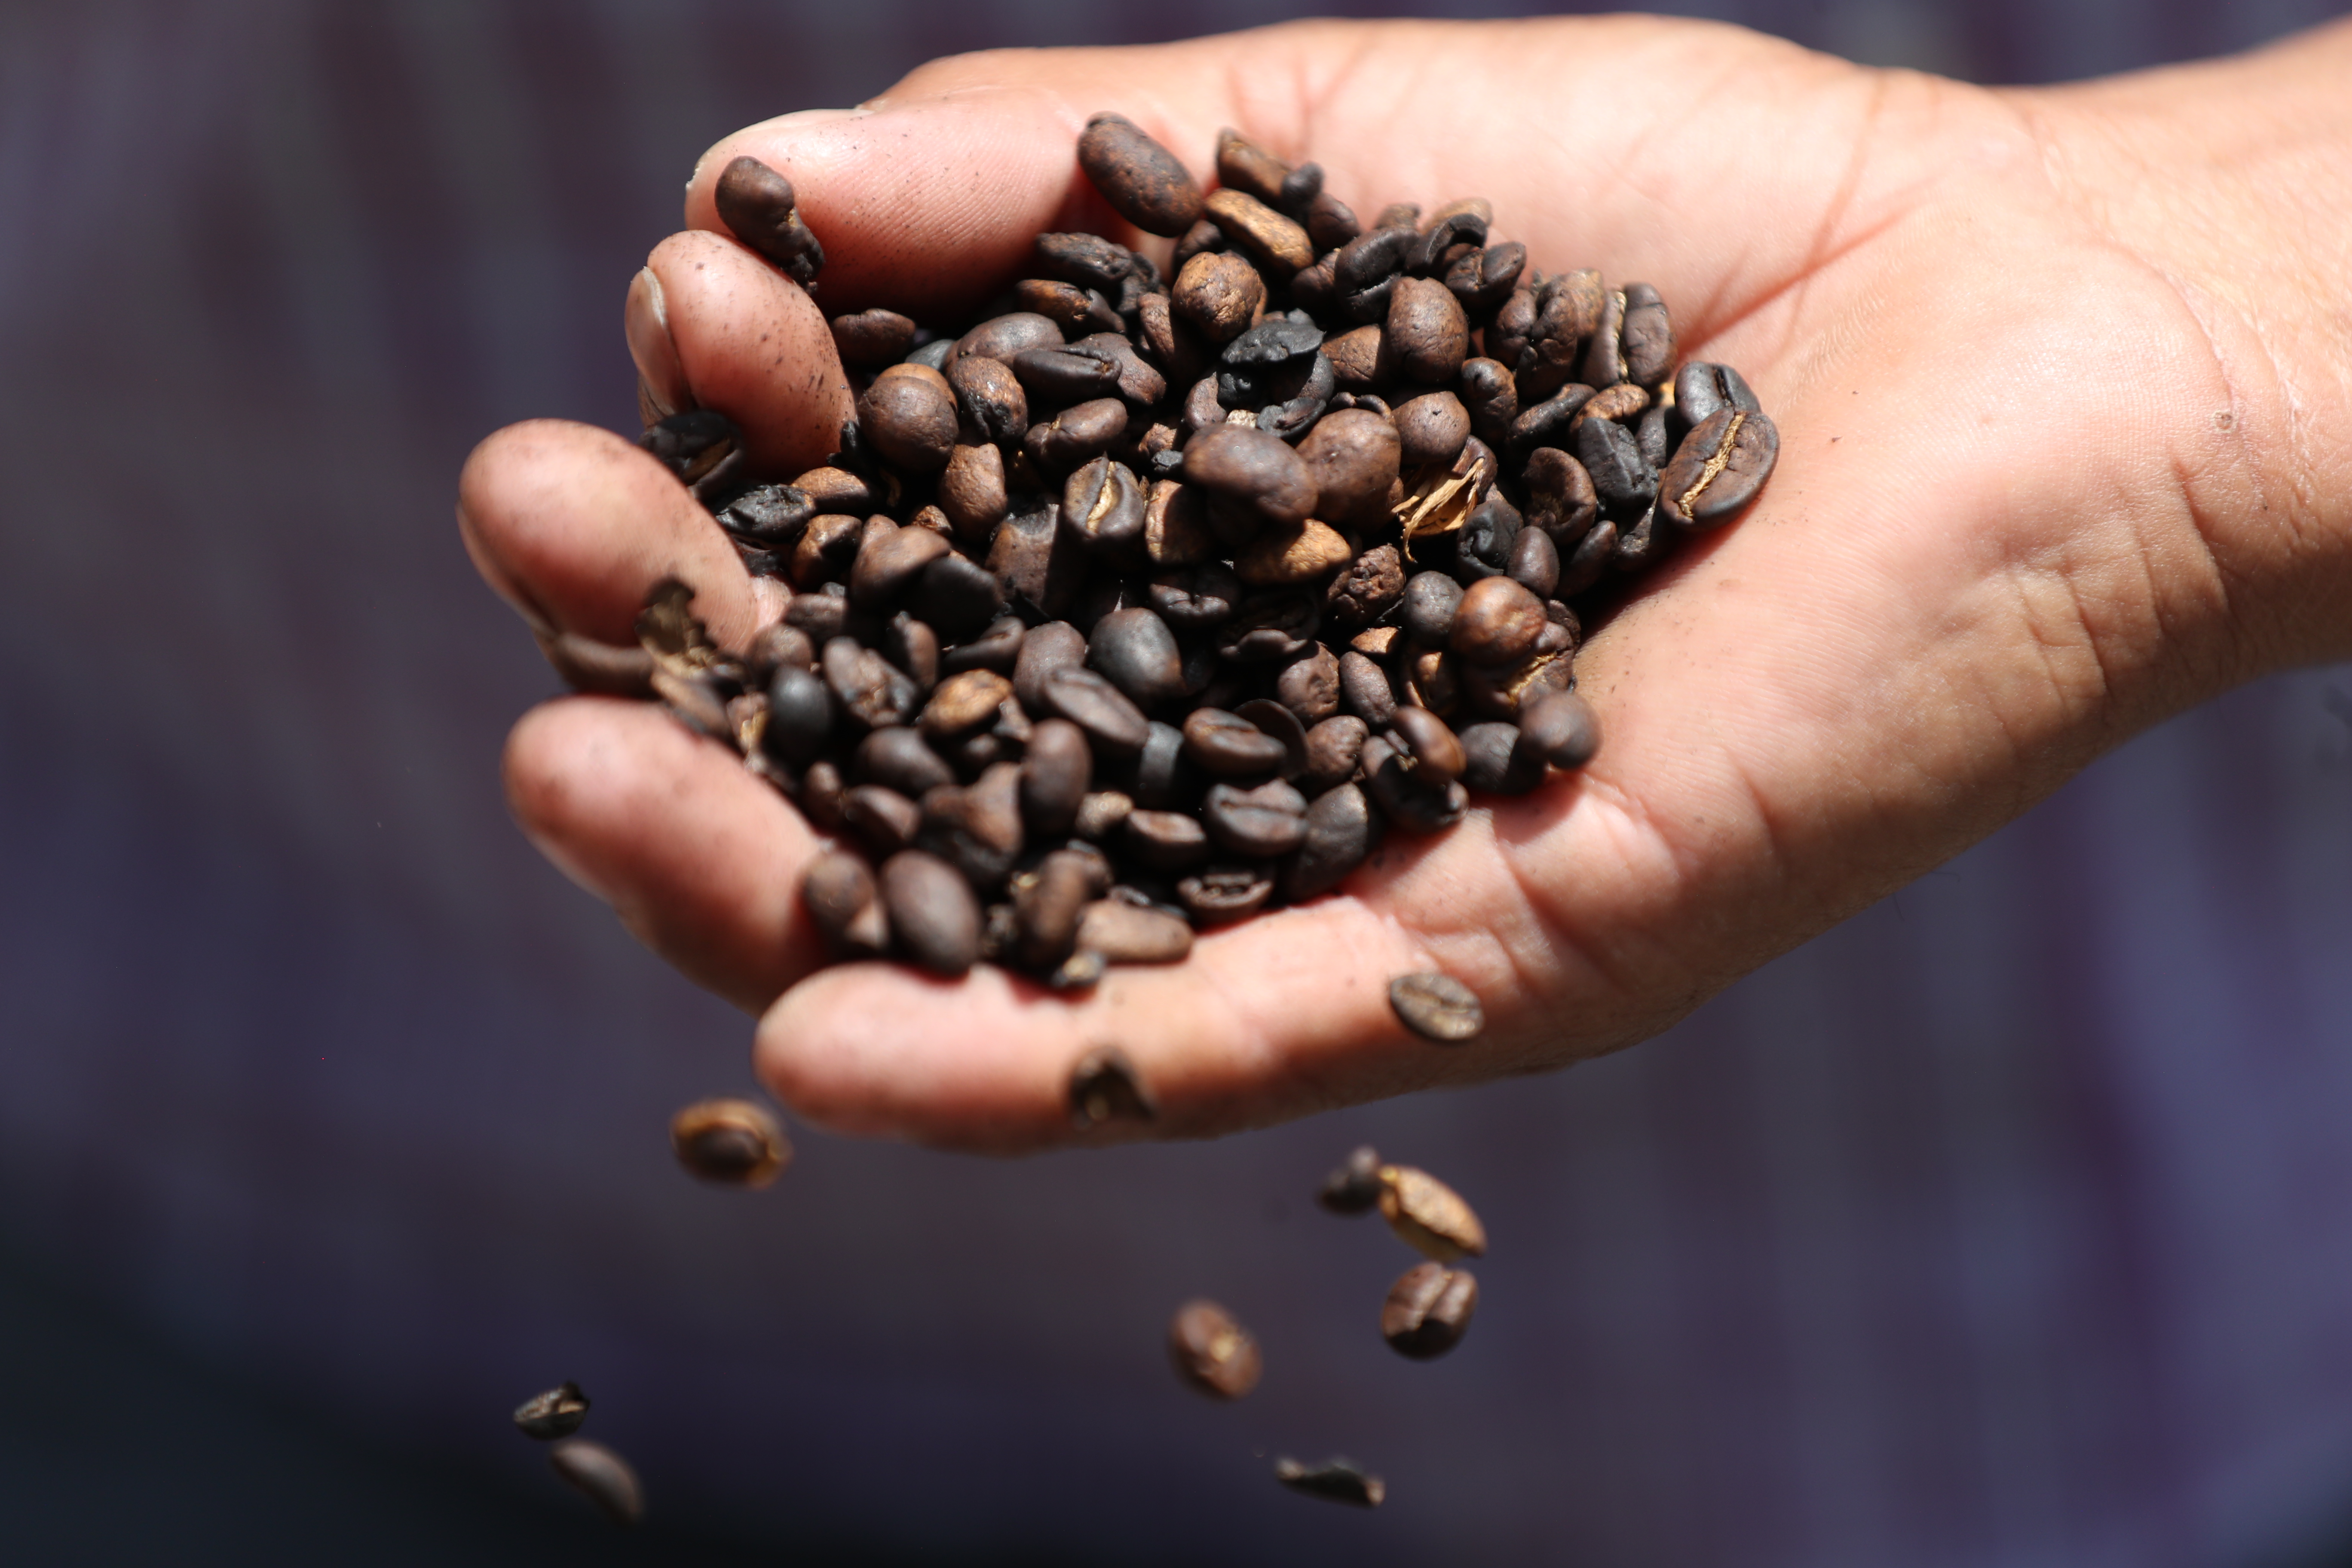 Según productores de café, los precios internacionales ya tocaron fondo y empezará la fase de recuperación que se consolidará en el 2020. (Foto Prensa Libre: Hemeroteca)